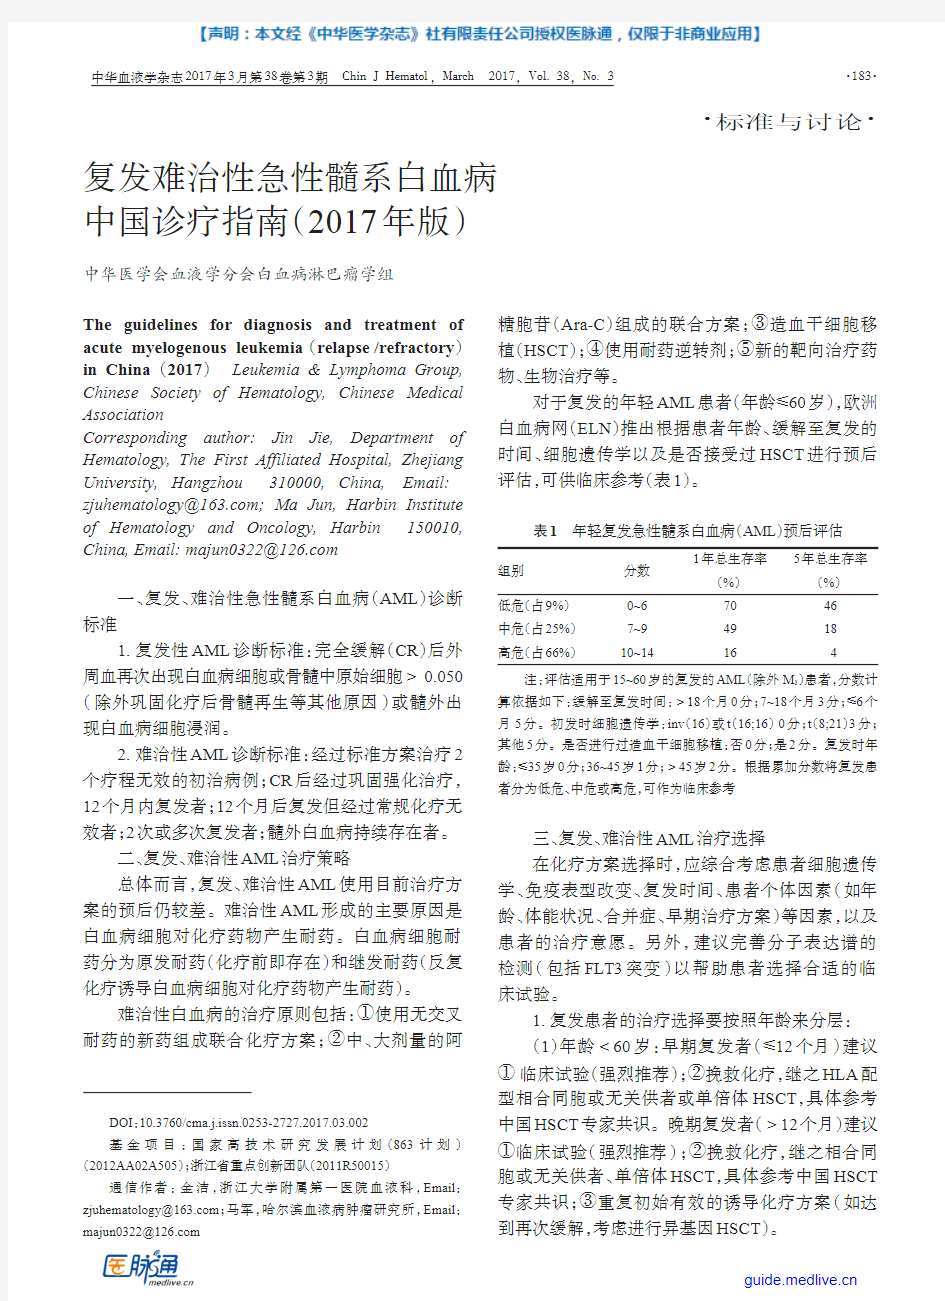 复发难治性急性髓系白血病中国诊疗指南(2017年版)